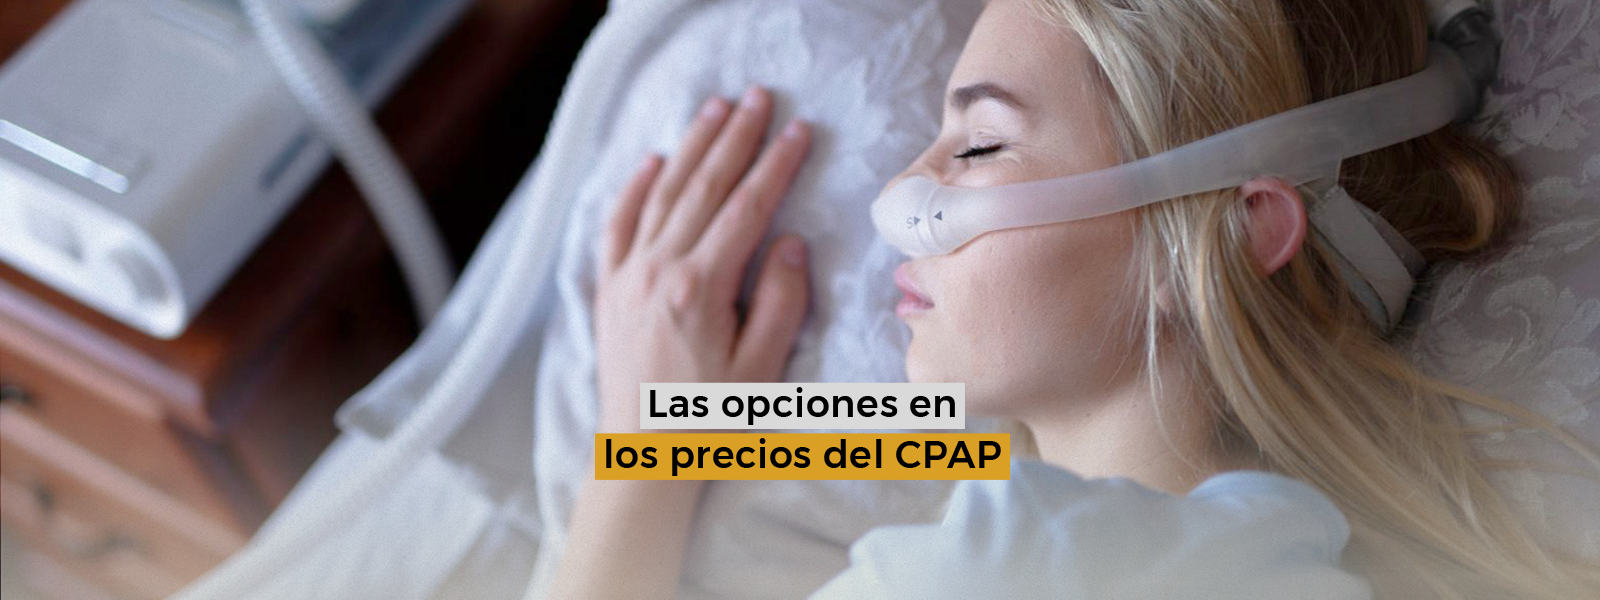 Las opciones en los precios del CPAP